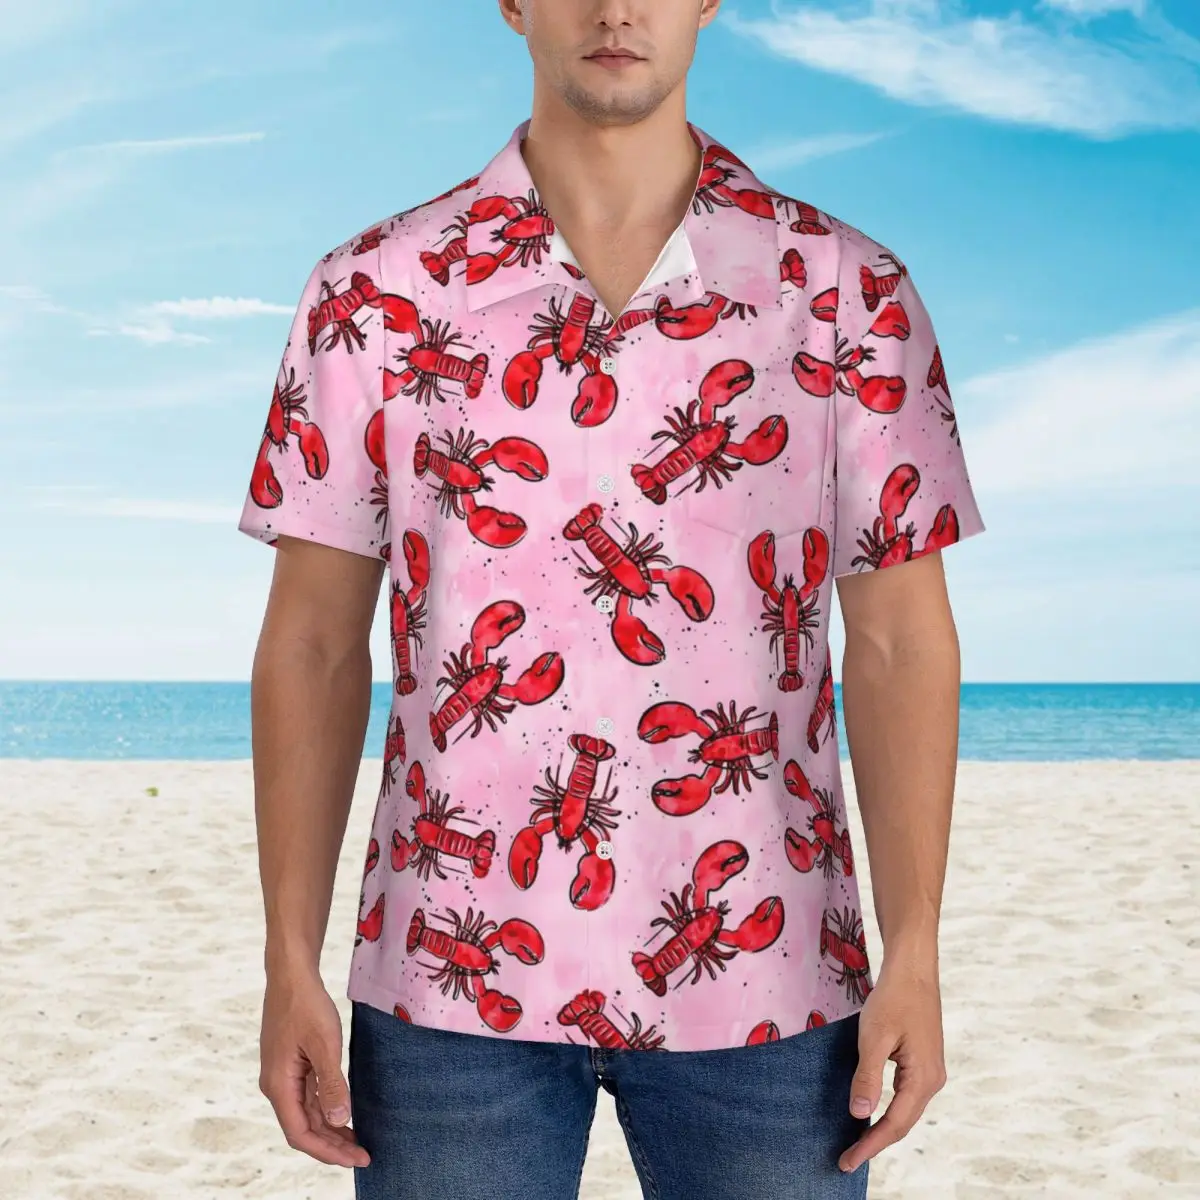 

Рубашка для отпуска Lobsters, красные и розовые летние повседневные рубашки, мужские модные блузки, стильный топ с графическим принтом и коротким рукавом